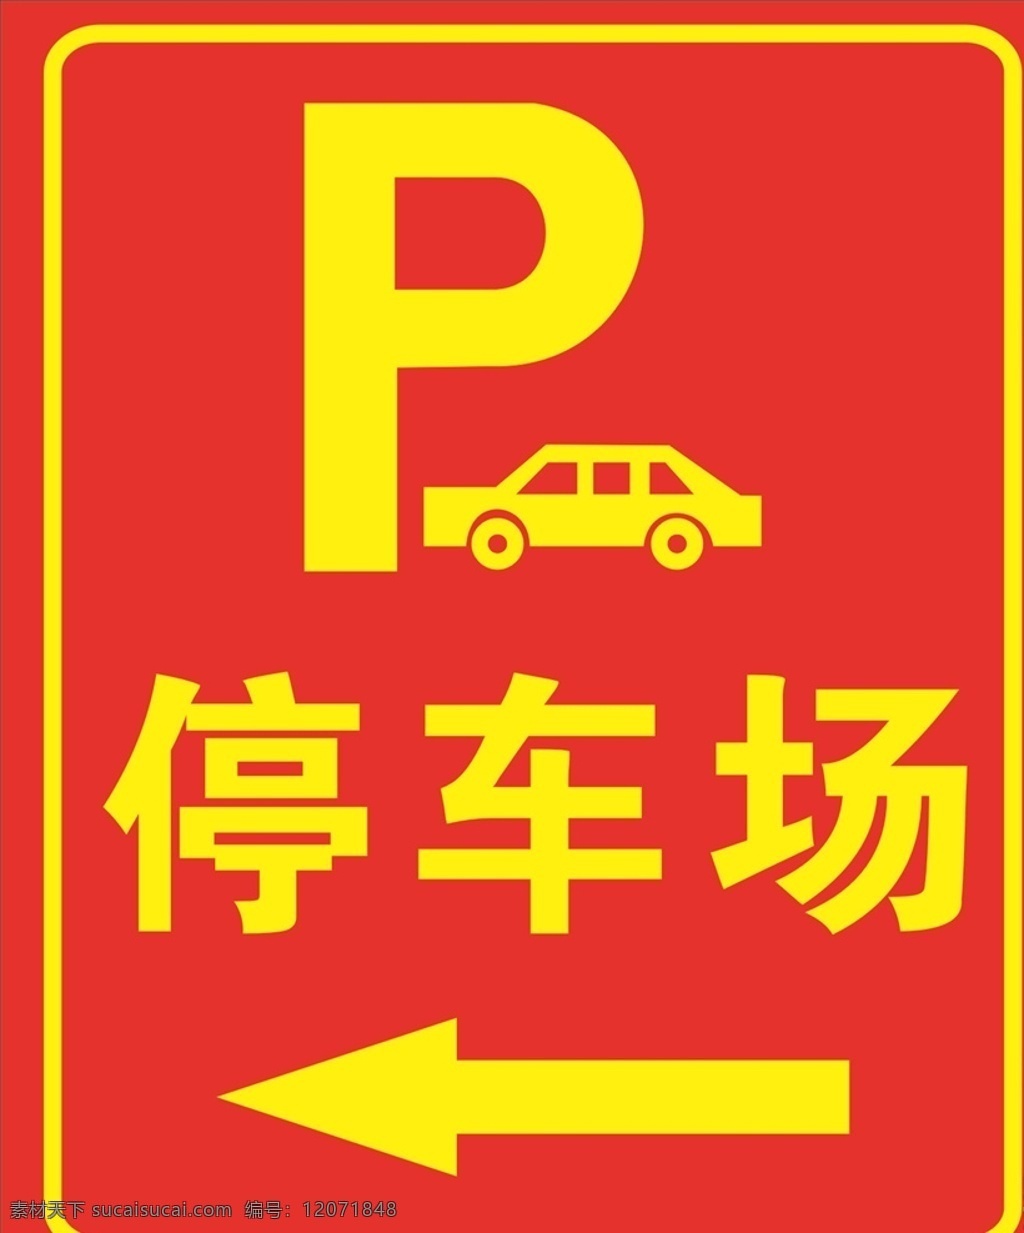 标志指示牌 标志 停车场标志 停车场指示牌 停车场标识 指示牌 商场指示 路标指示 挂牌 大巴指示牌 导视牌 大巴停车场 停车场 引导牌 标识 向导 向左